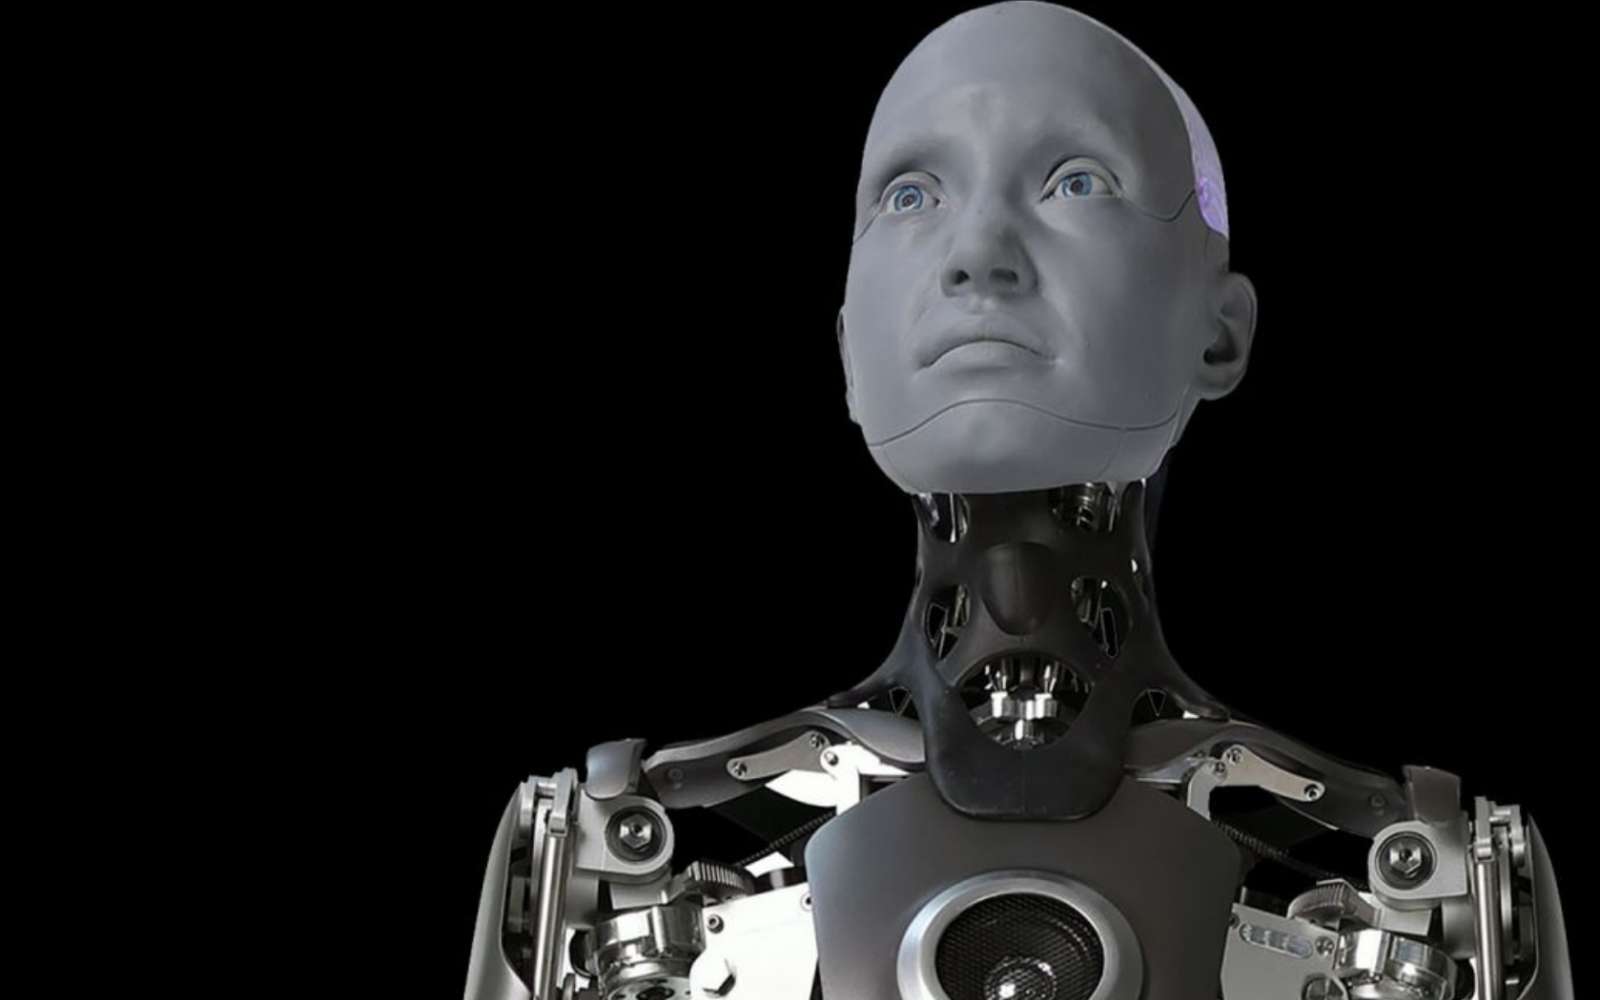 Voici Ameca, un robot humanoïde tellement réaliste qu’il peut faire peur. © Engineered Arts